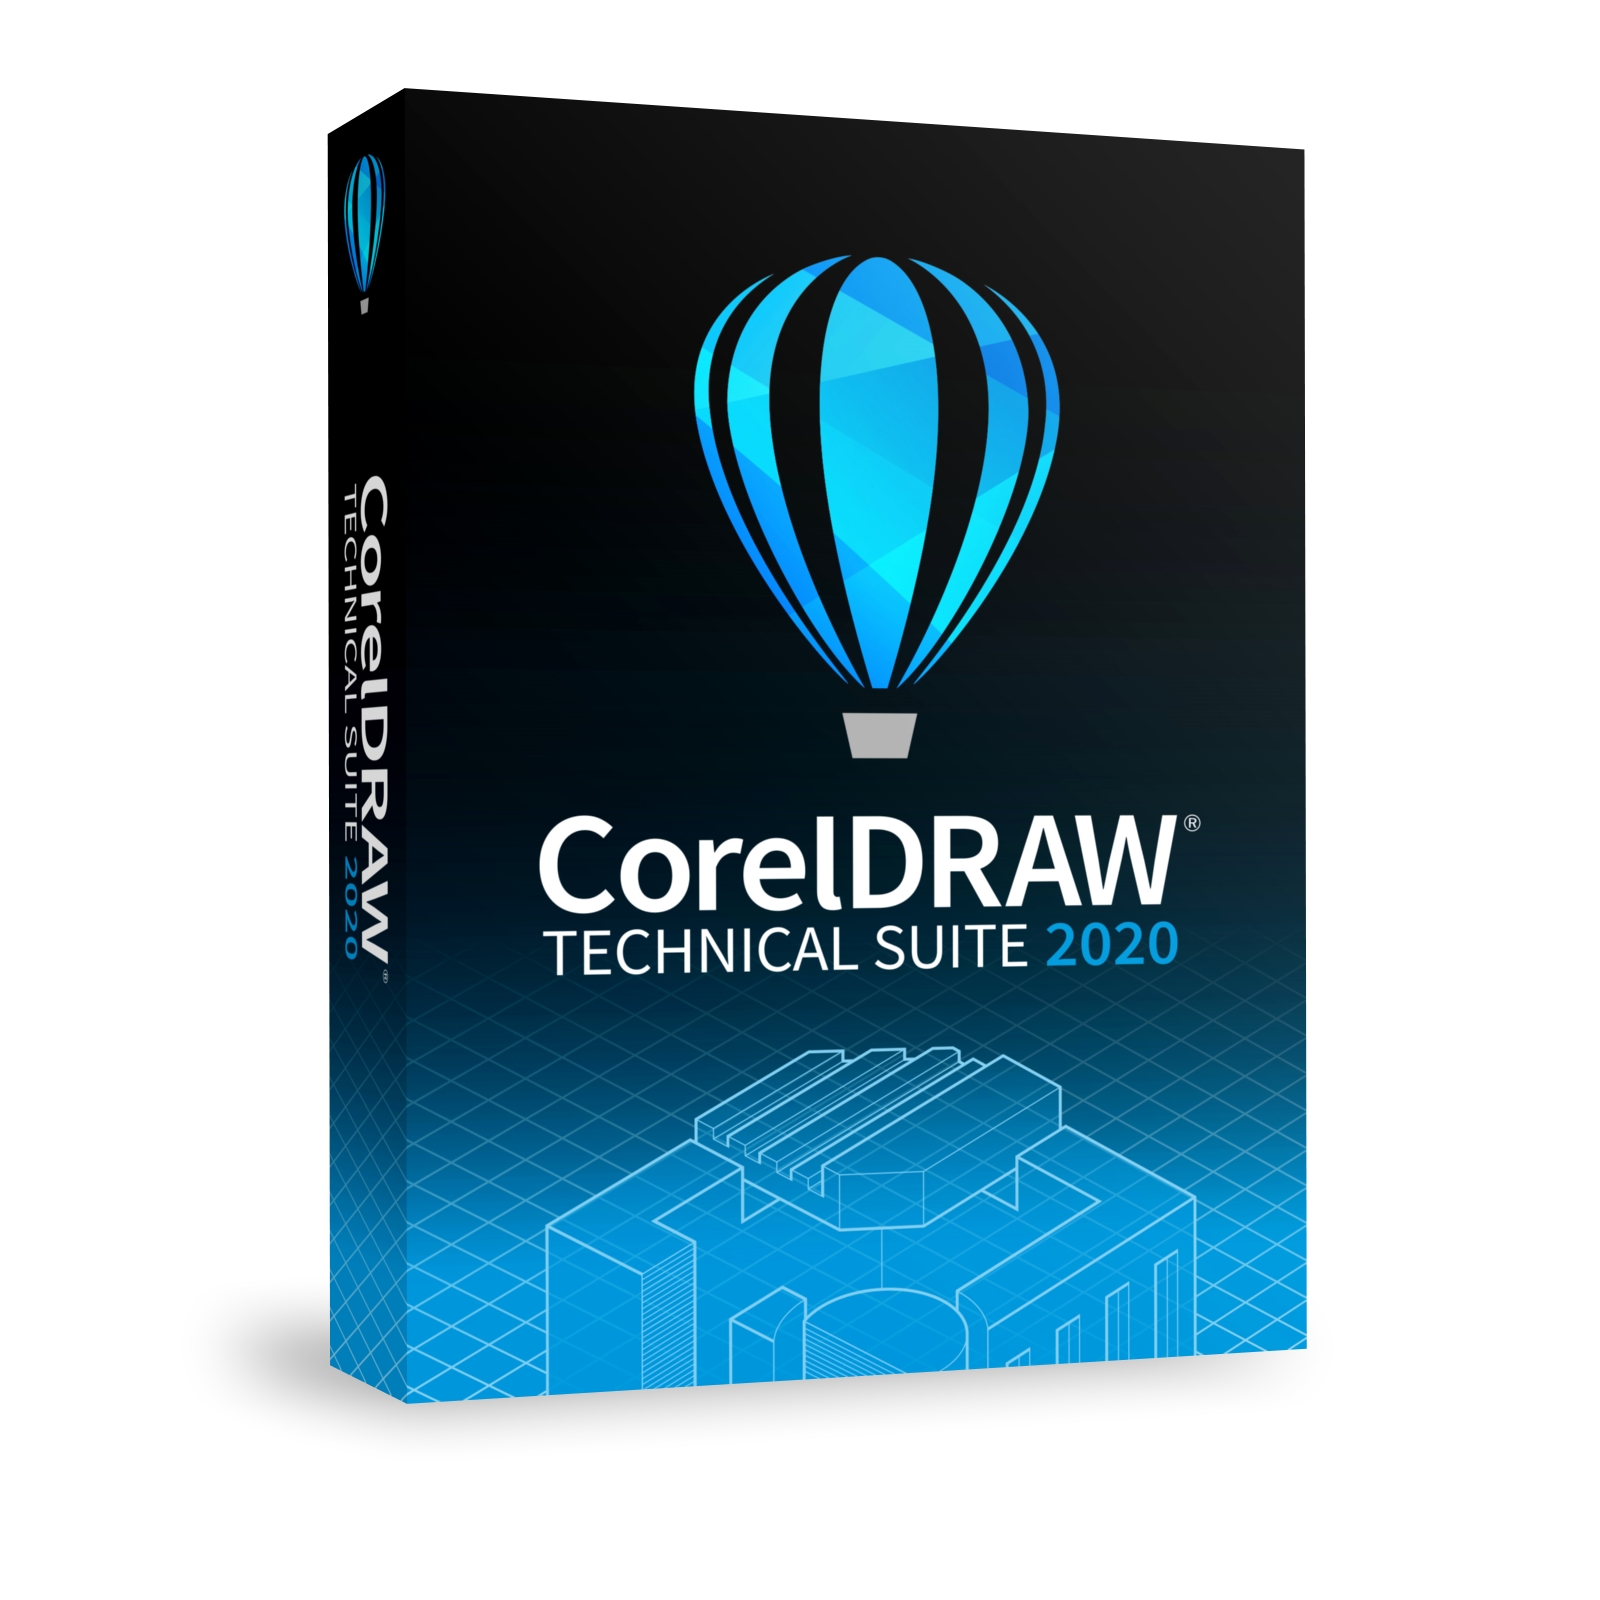 coreldraw technical suite 2020 download